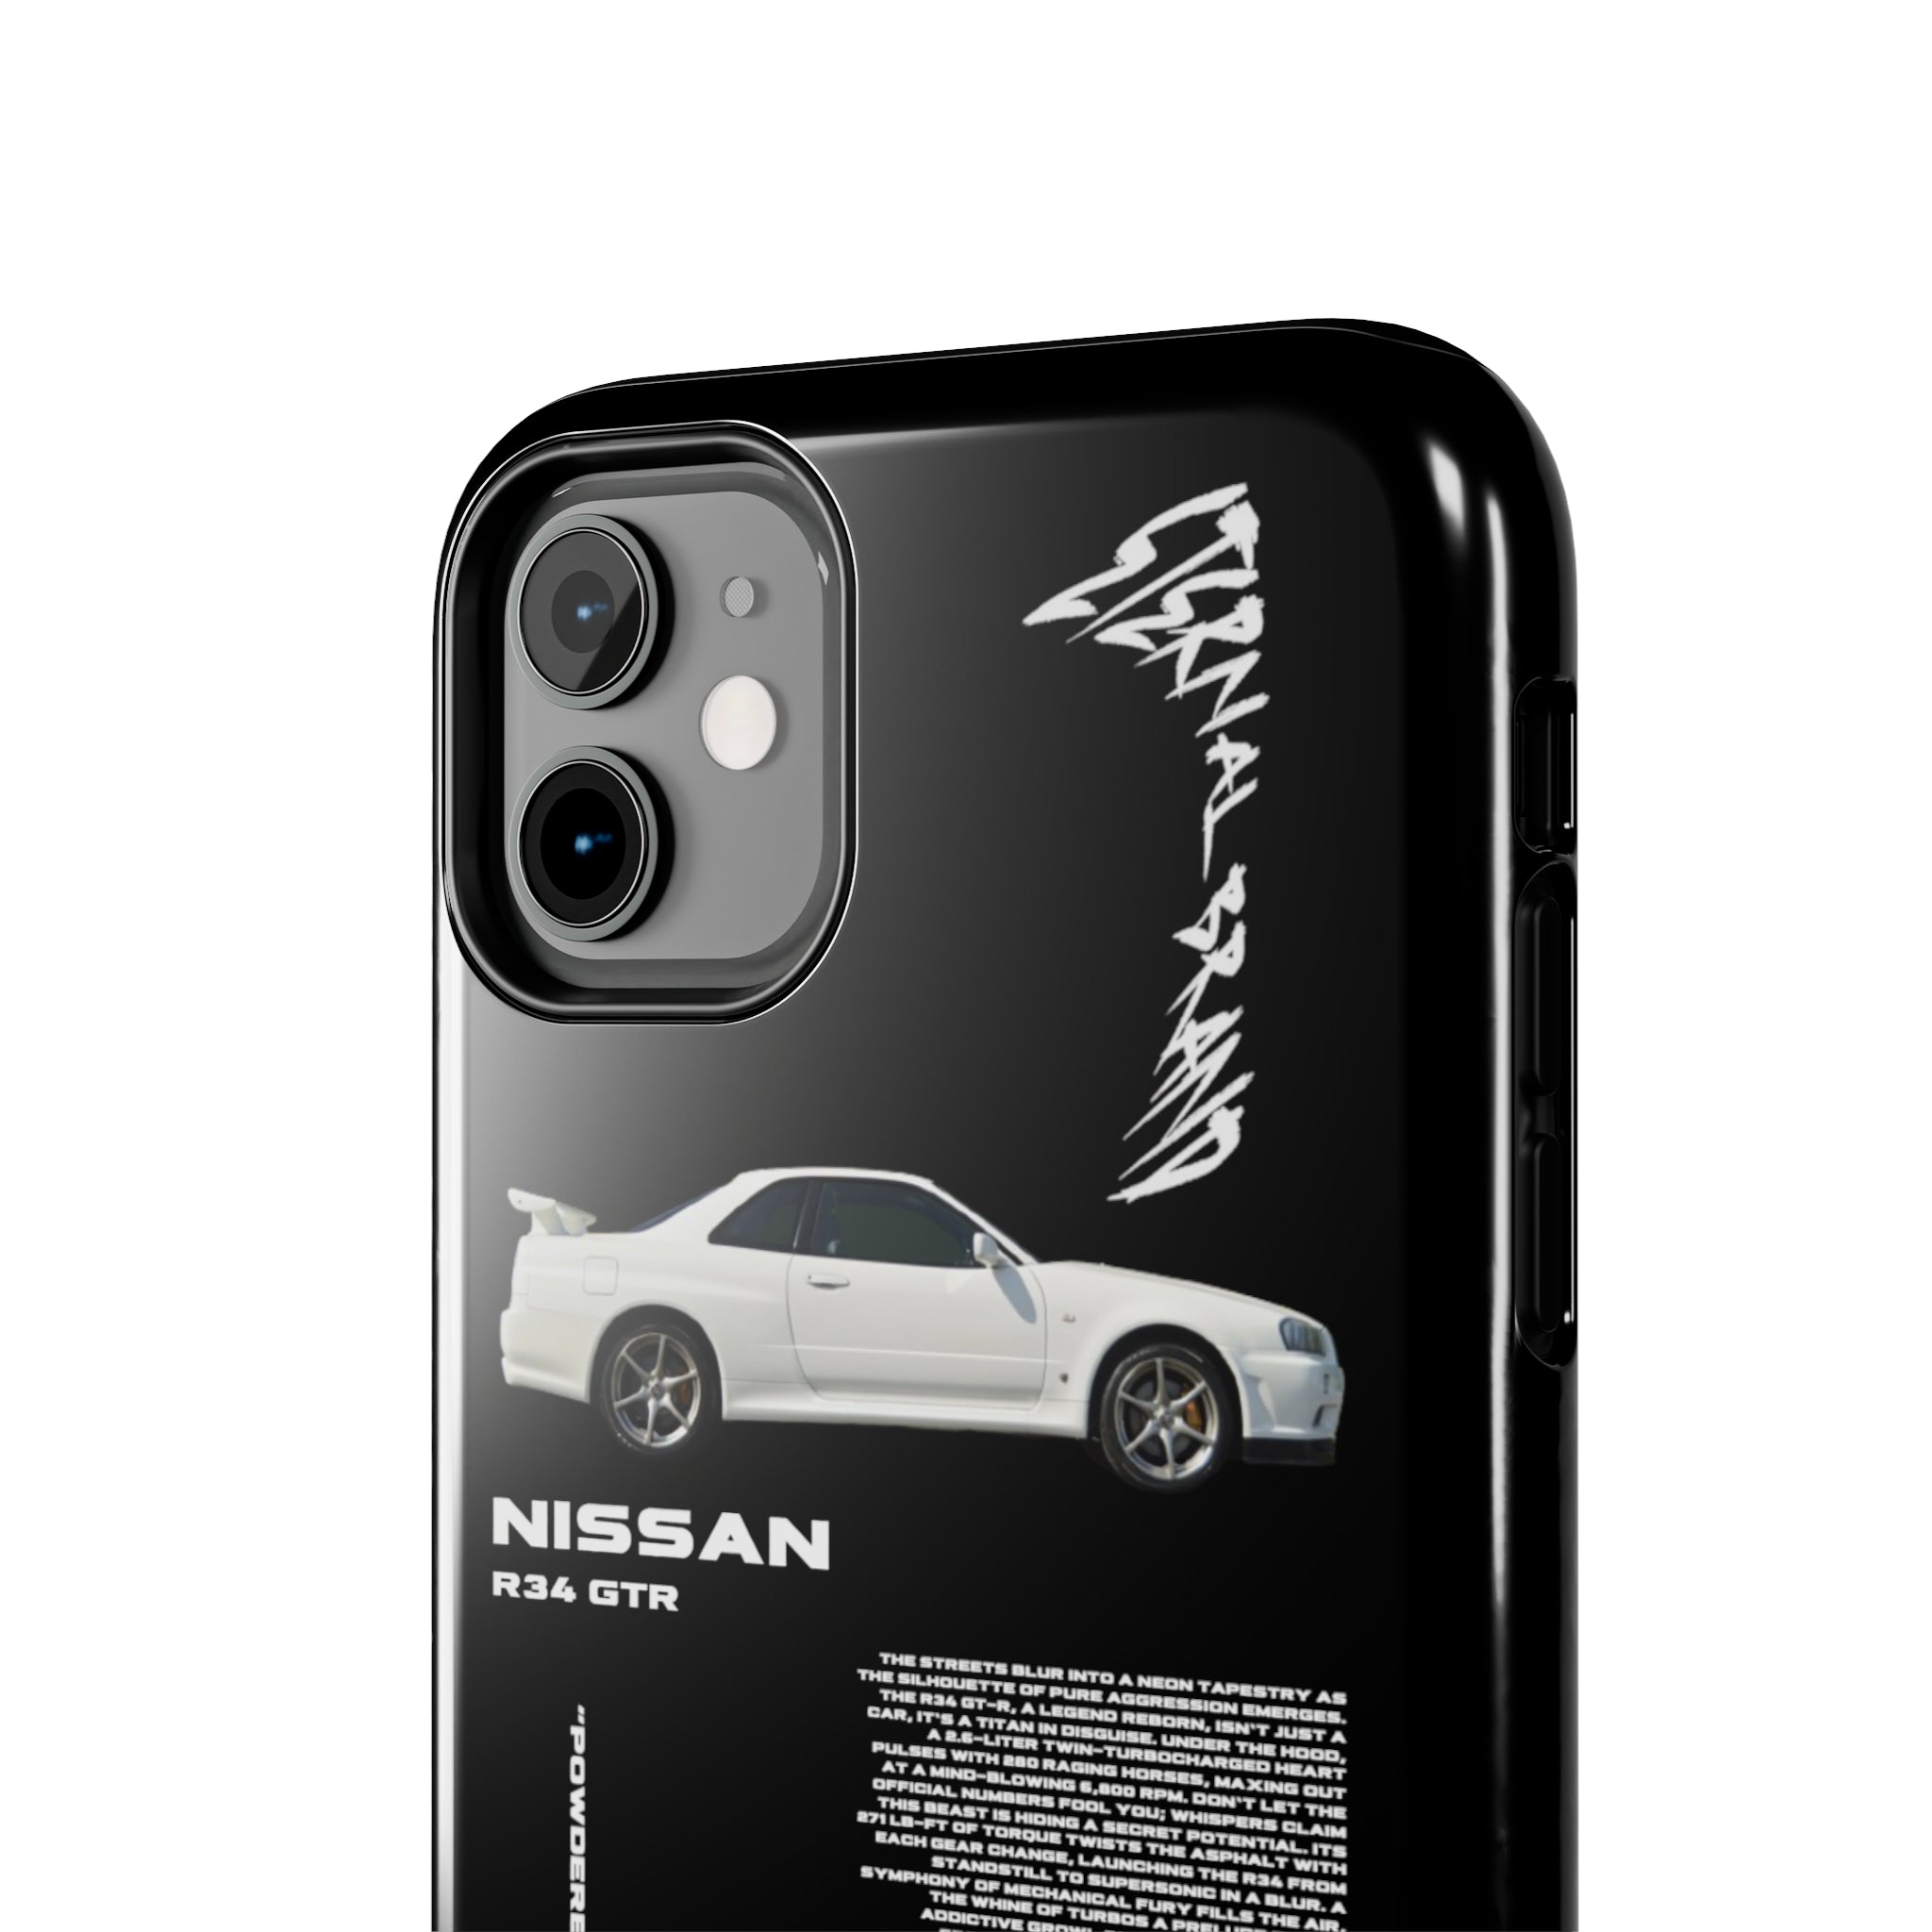 Nissan R34 GTR "White" "Noir"